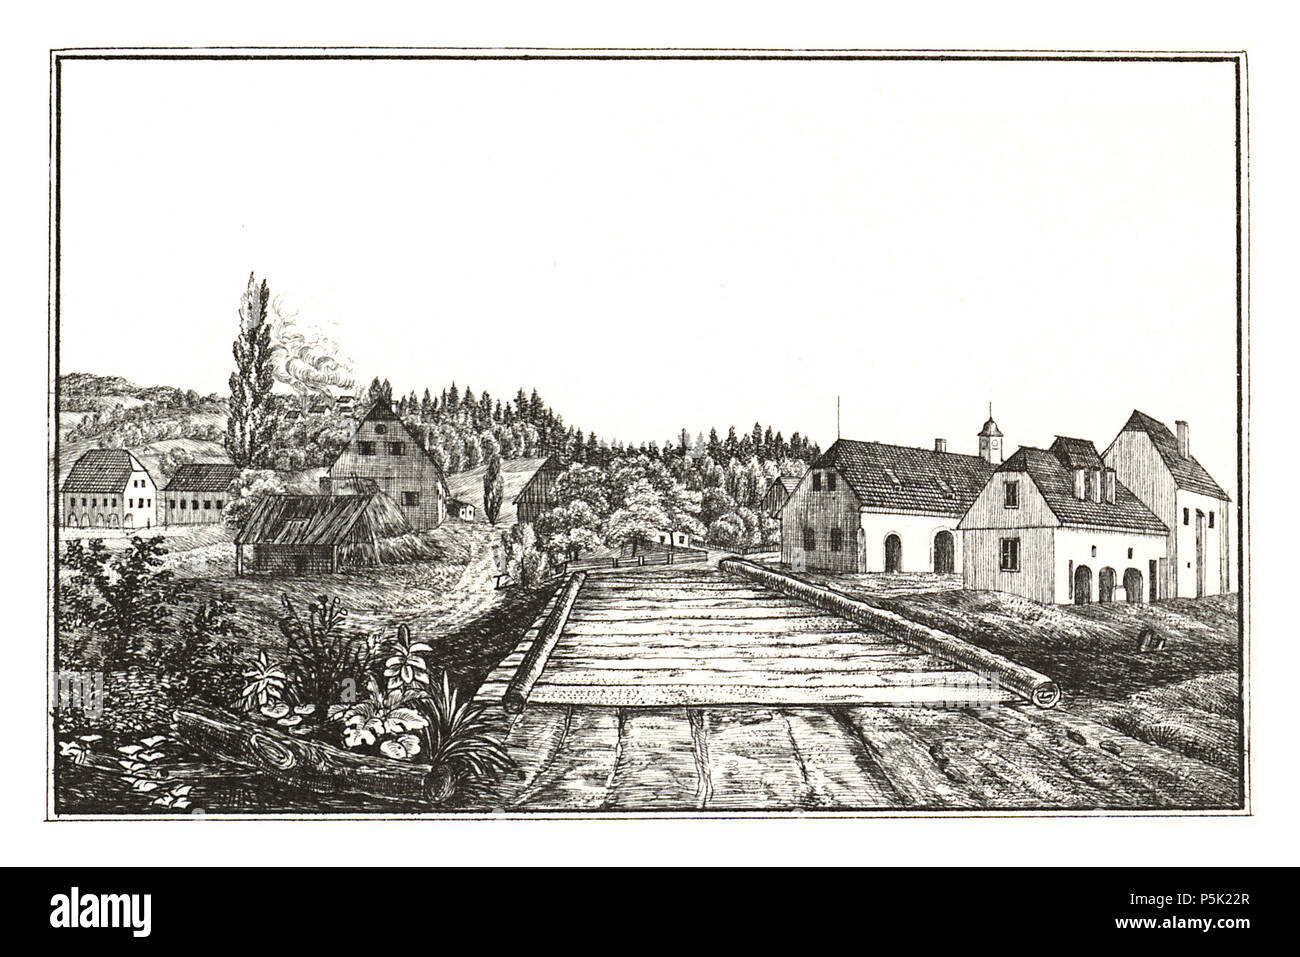 34 205 Oberdorf, Glashütte, Bärnbach - aufg. von Alex Kaiser - J.F.Kaiser Lithografirte Ansichten der Steiermark 1830 Stock Photo